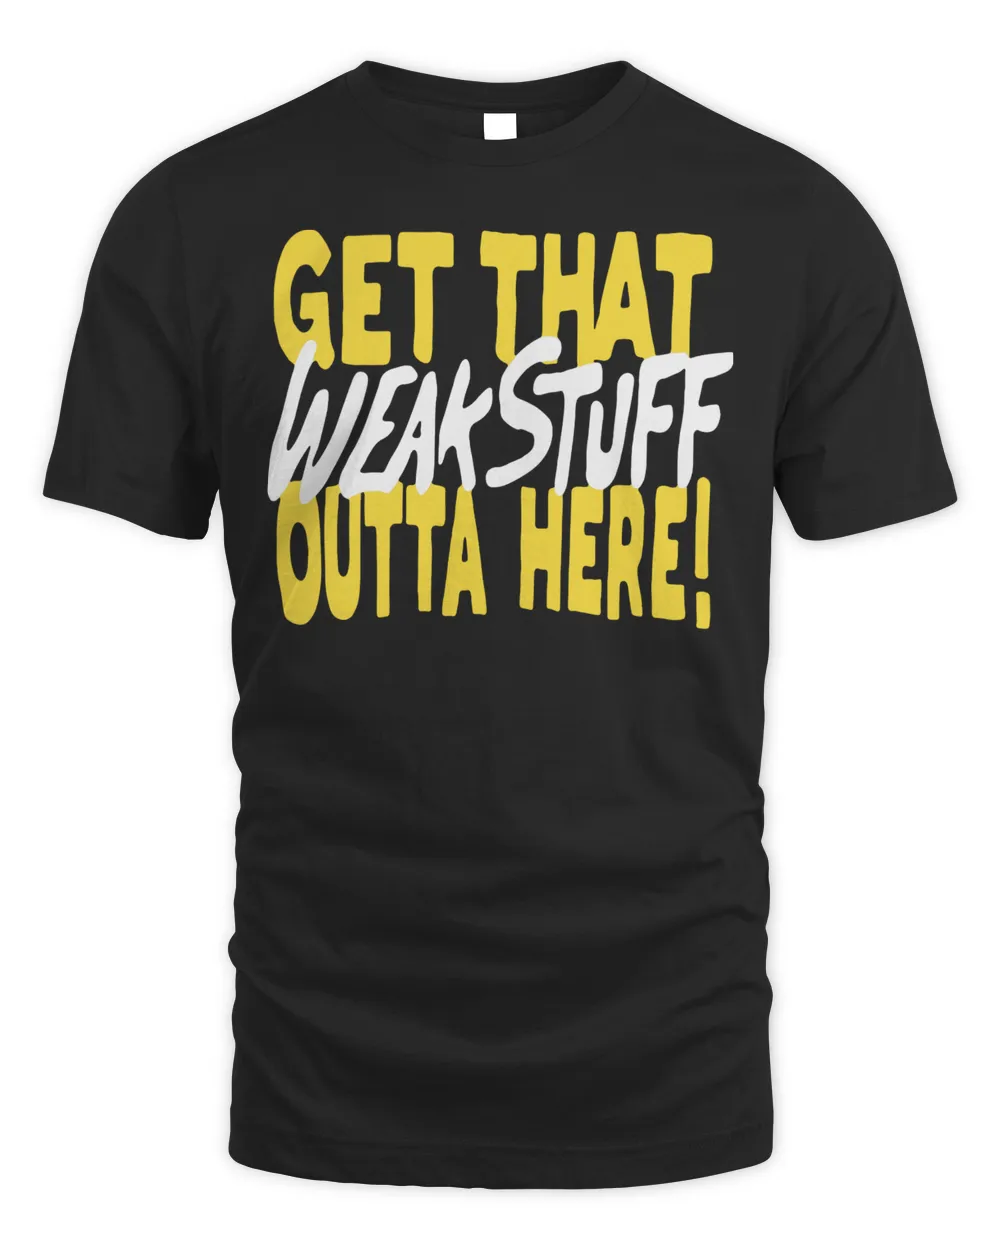 Official Get that weak stuff outta here T-shirt Unisex Standard T-Shirt black 